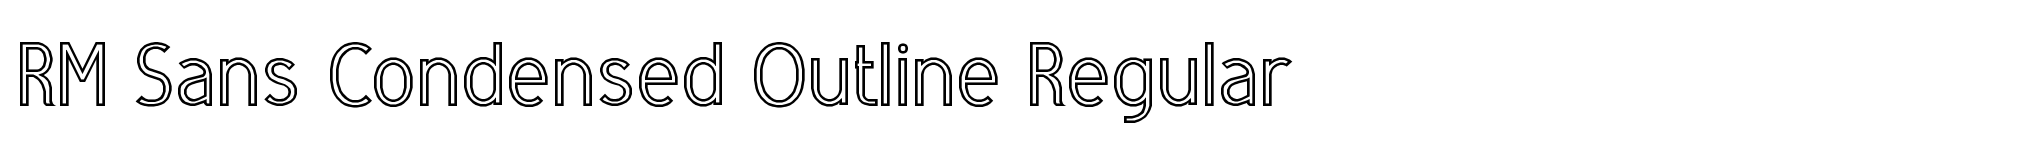 RM Sans Condensed Outline Regular image